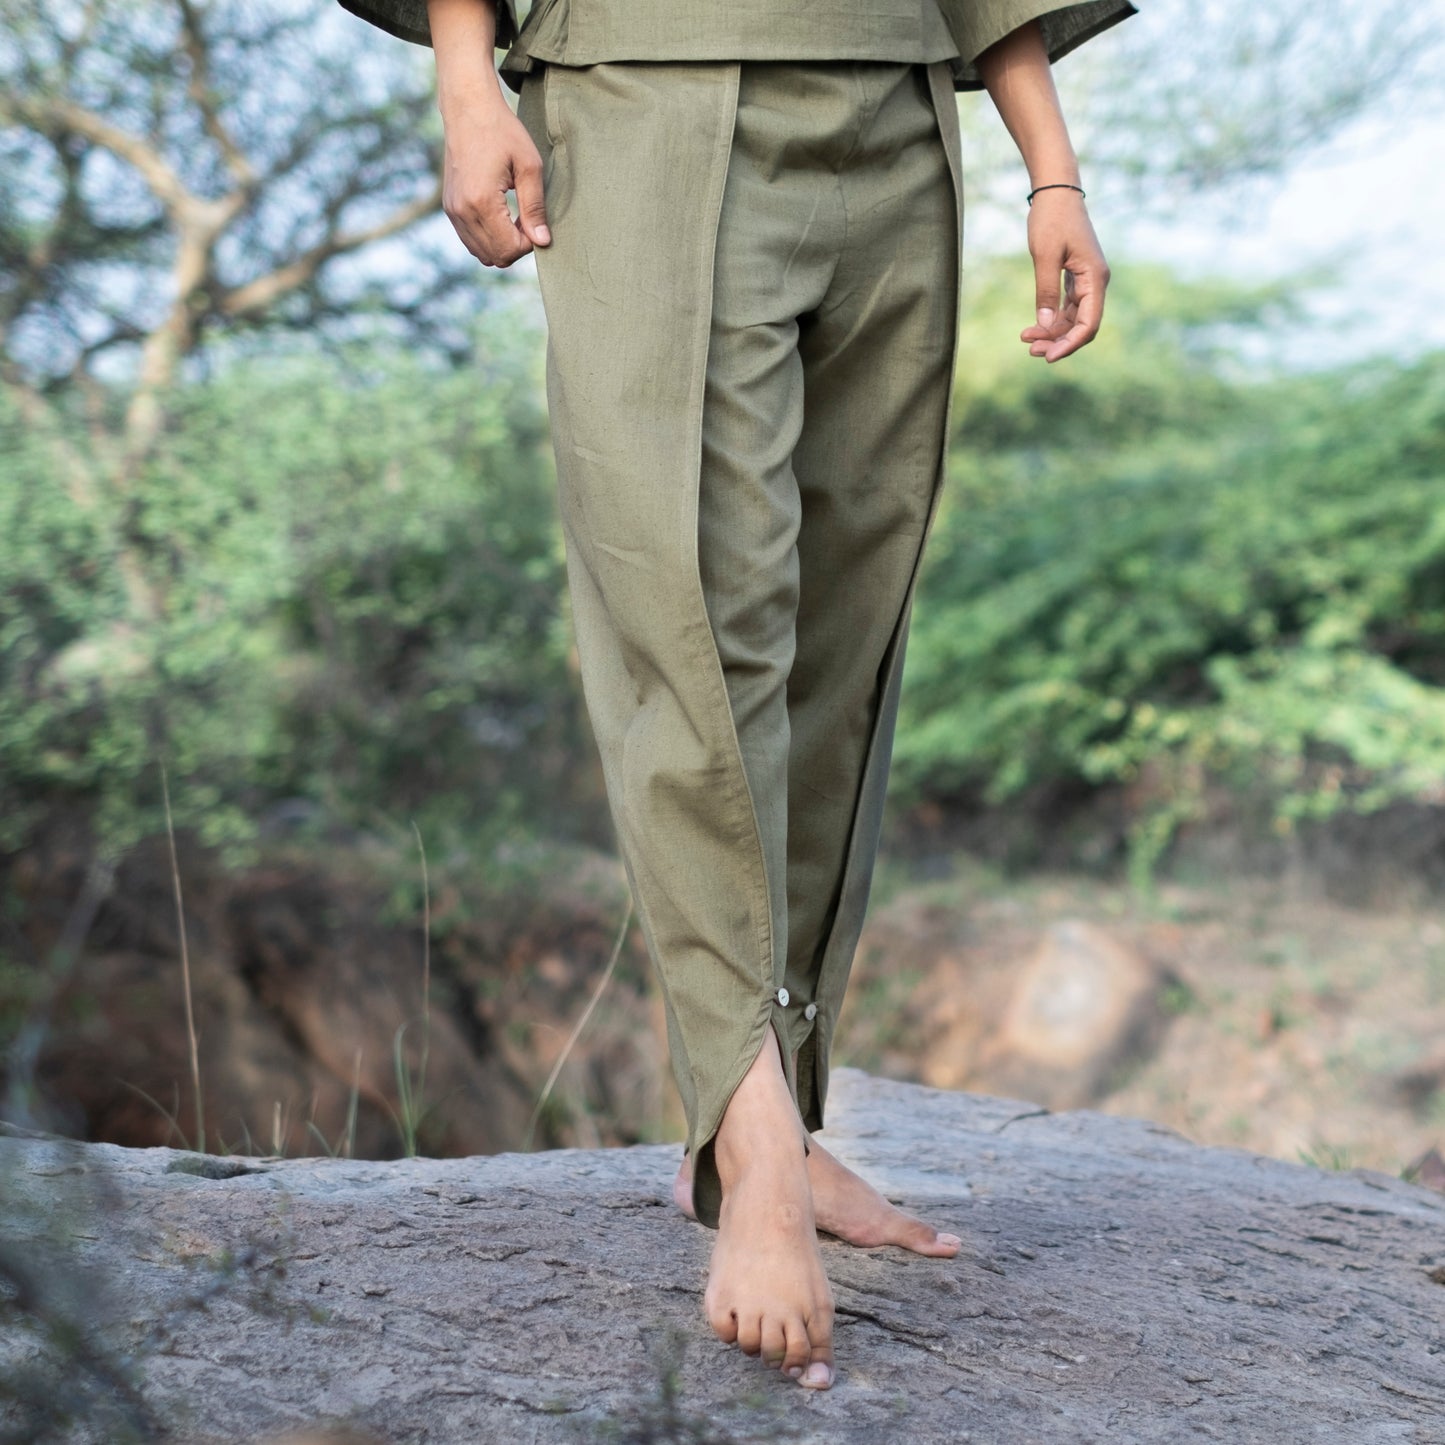 Surya Yoga Top and Pant Set Green